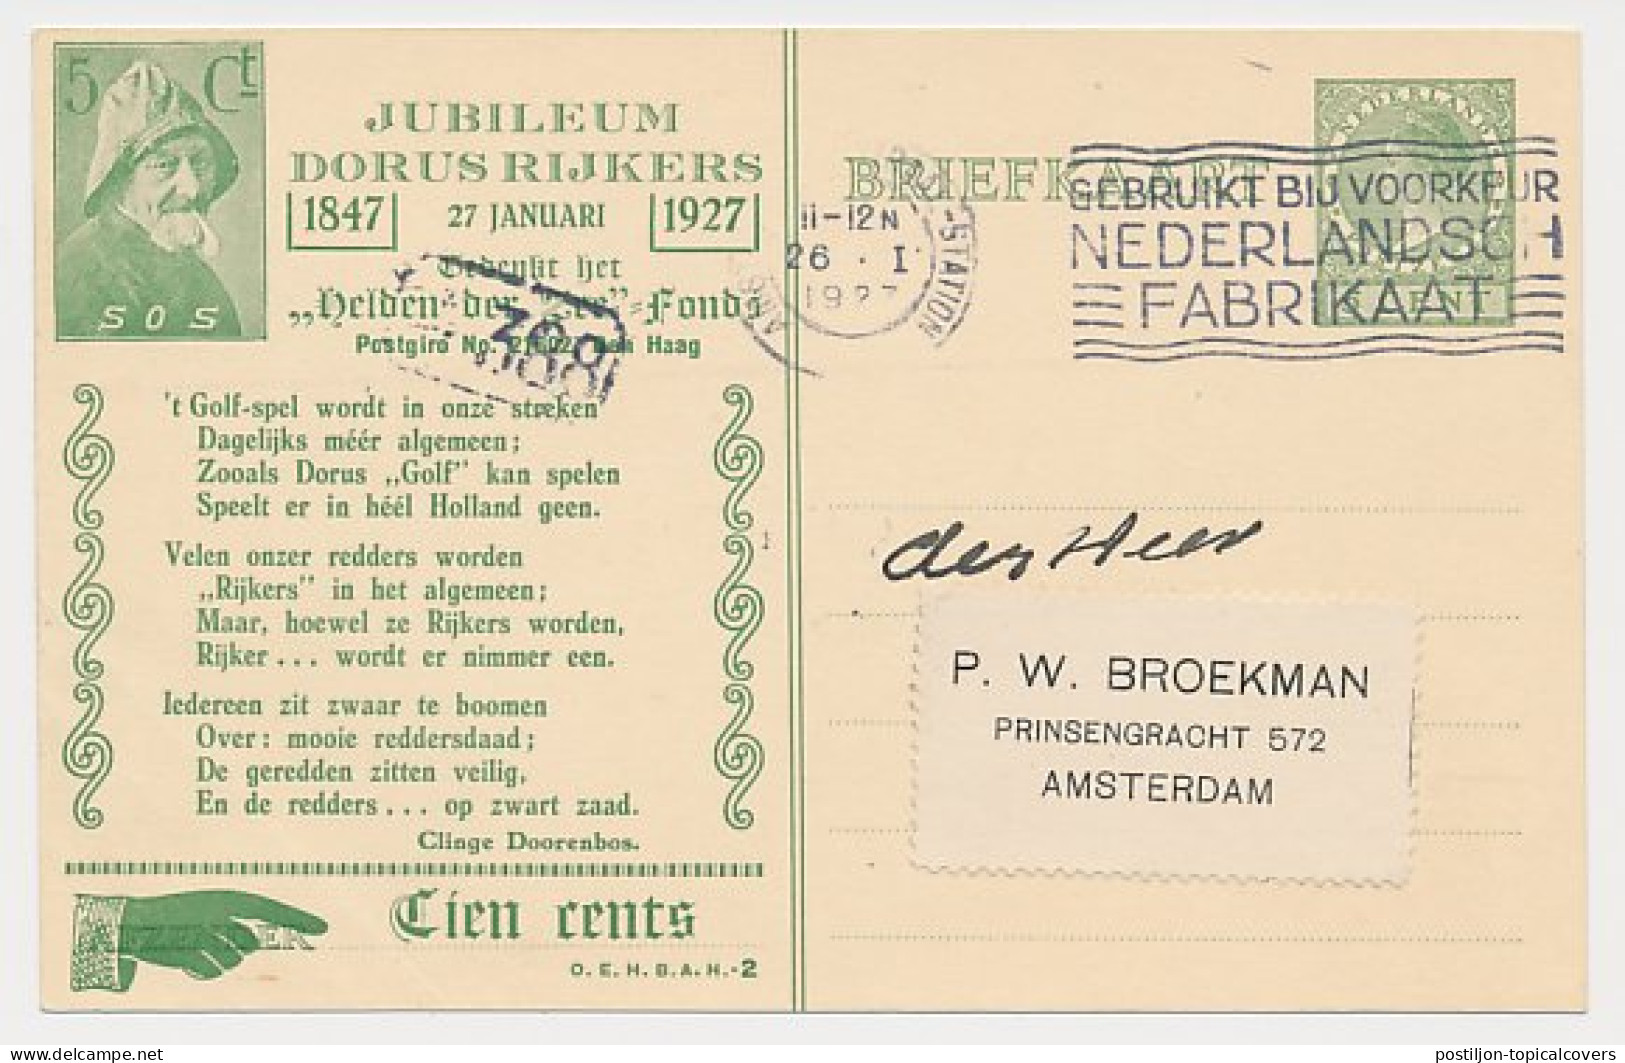 Particuliere Briefkaart Geuzendam DR19 - Vroegst Bekende Datum - Ganzsachen